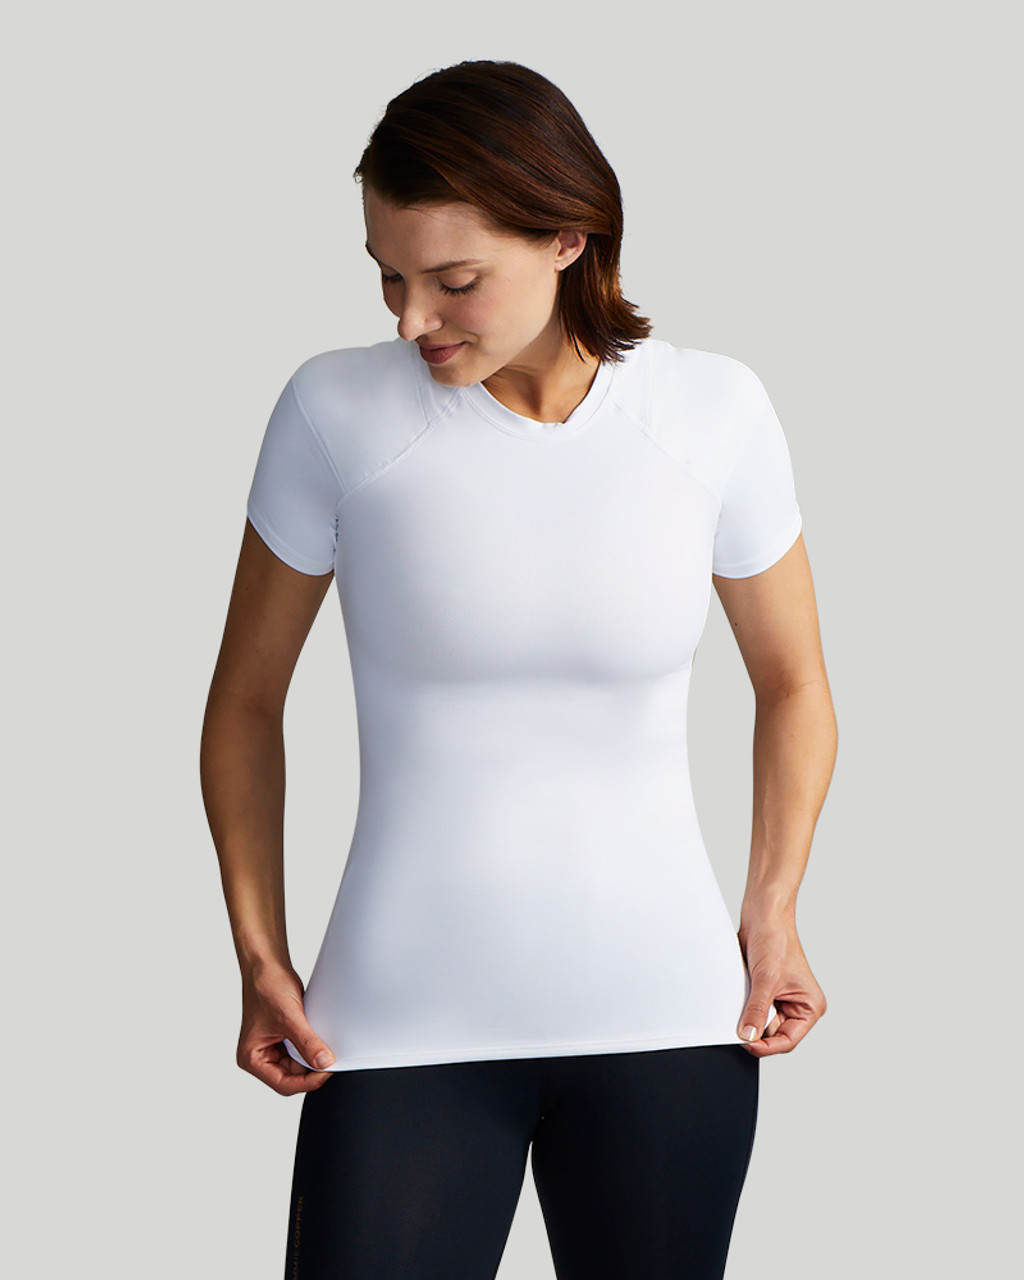 Shoulder Support Shirt | Women's Short Sleeve